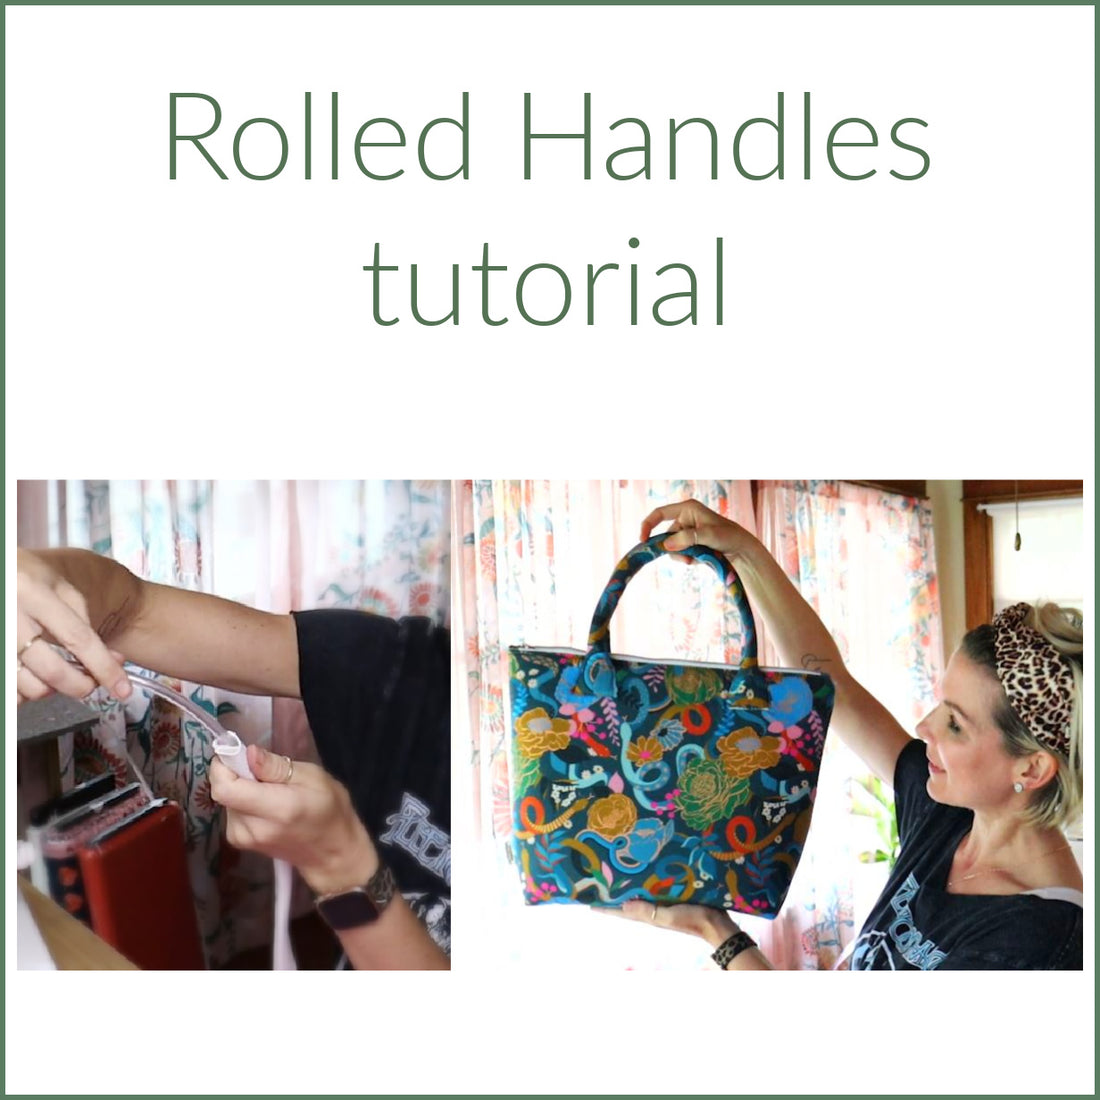 Rolled Handles video tutorial